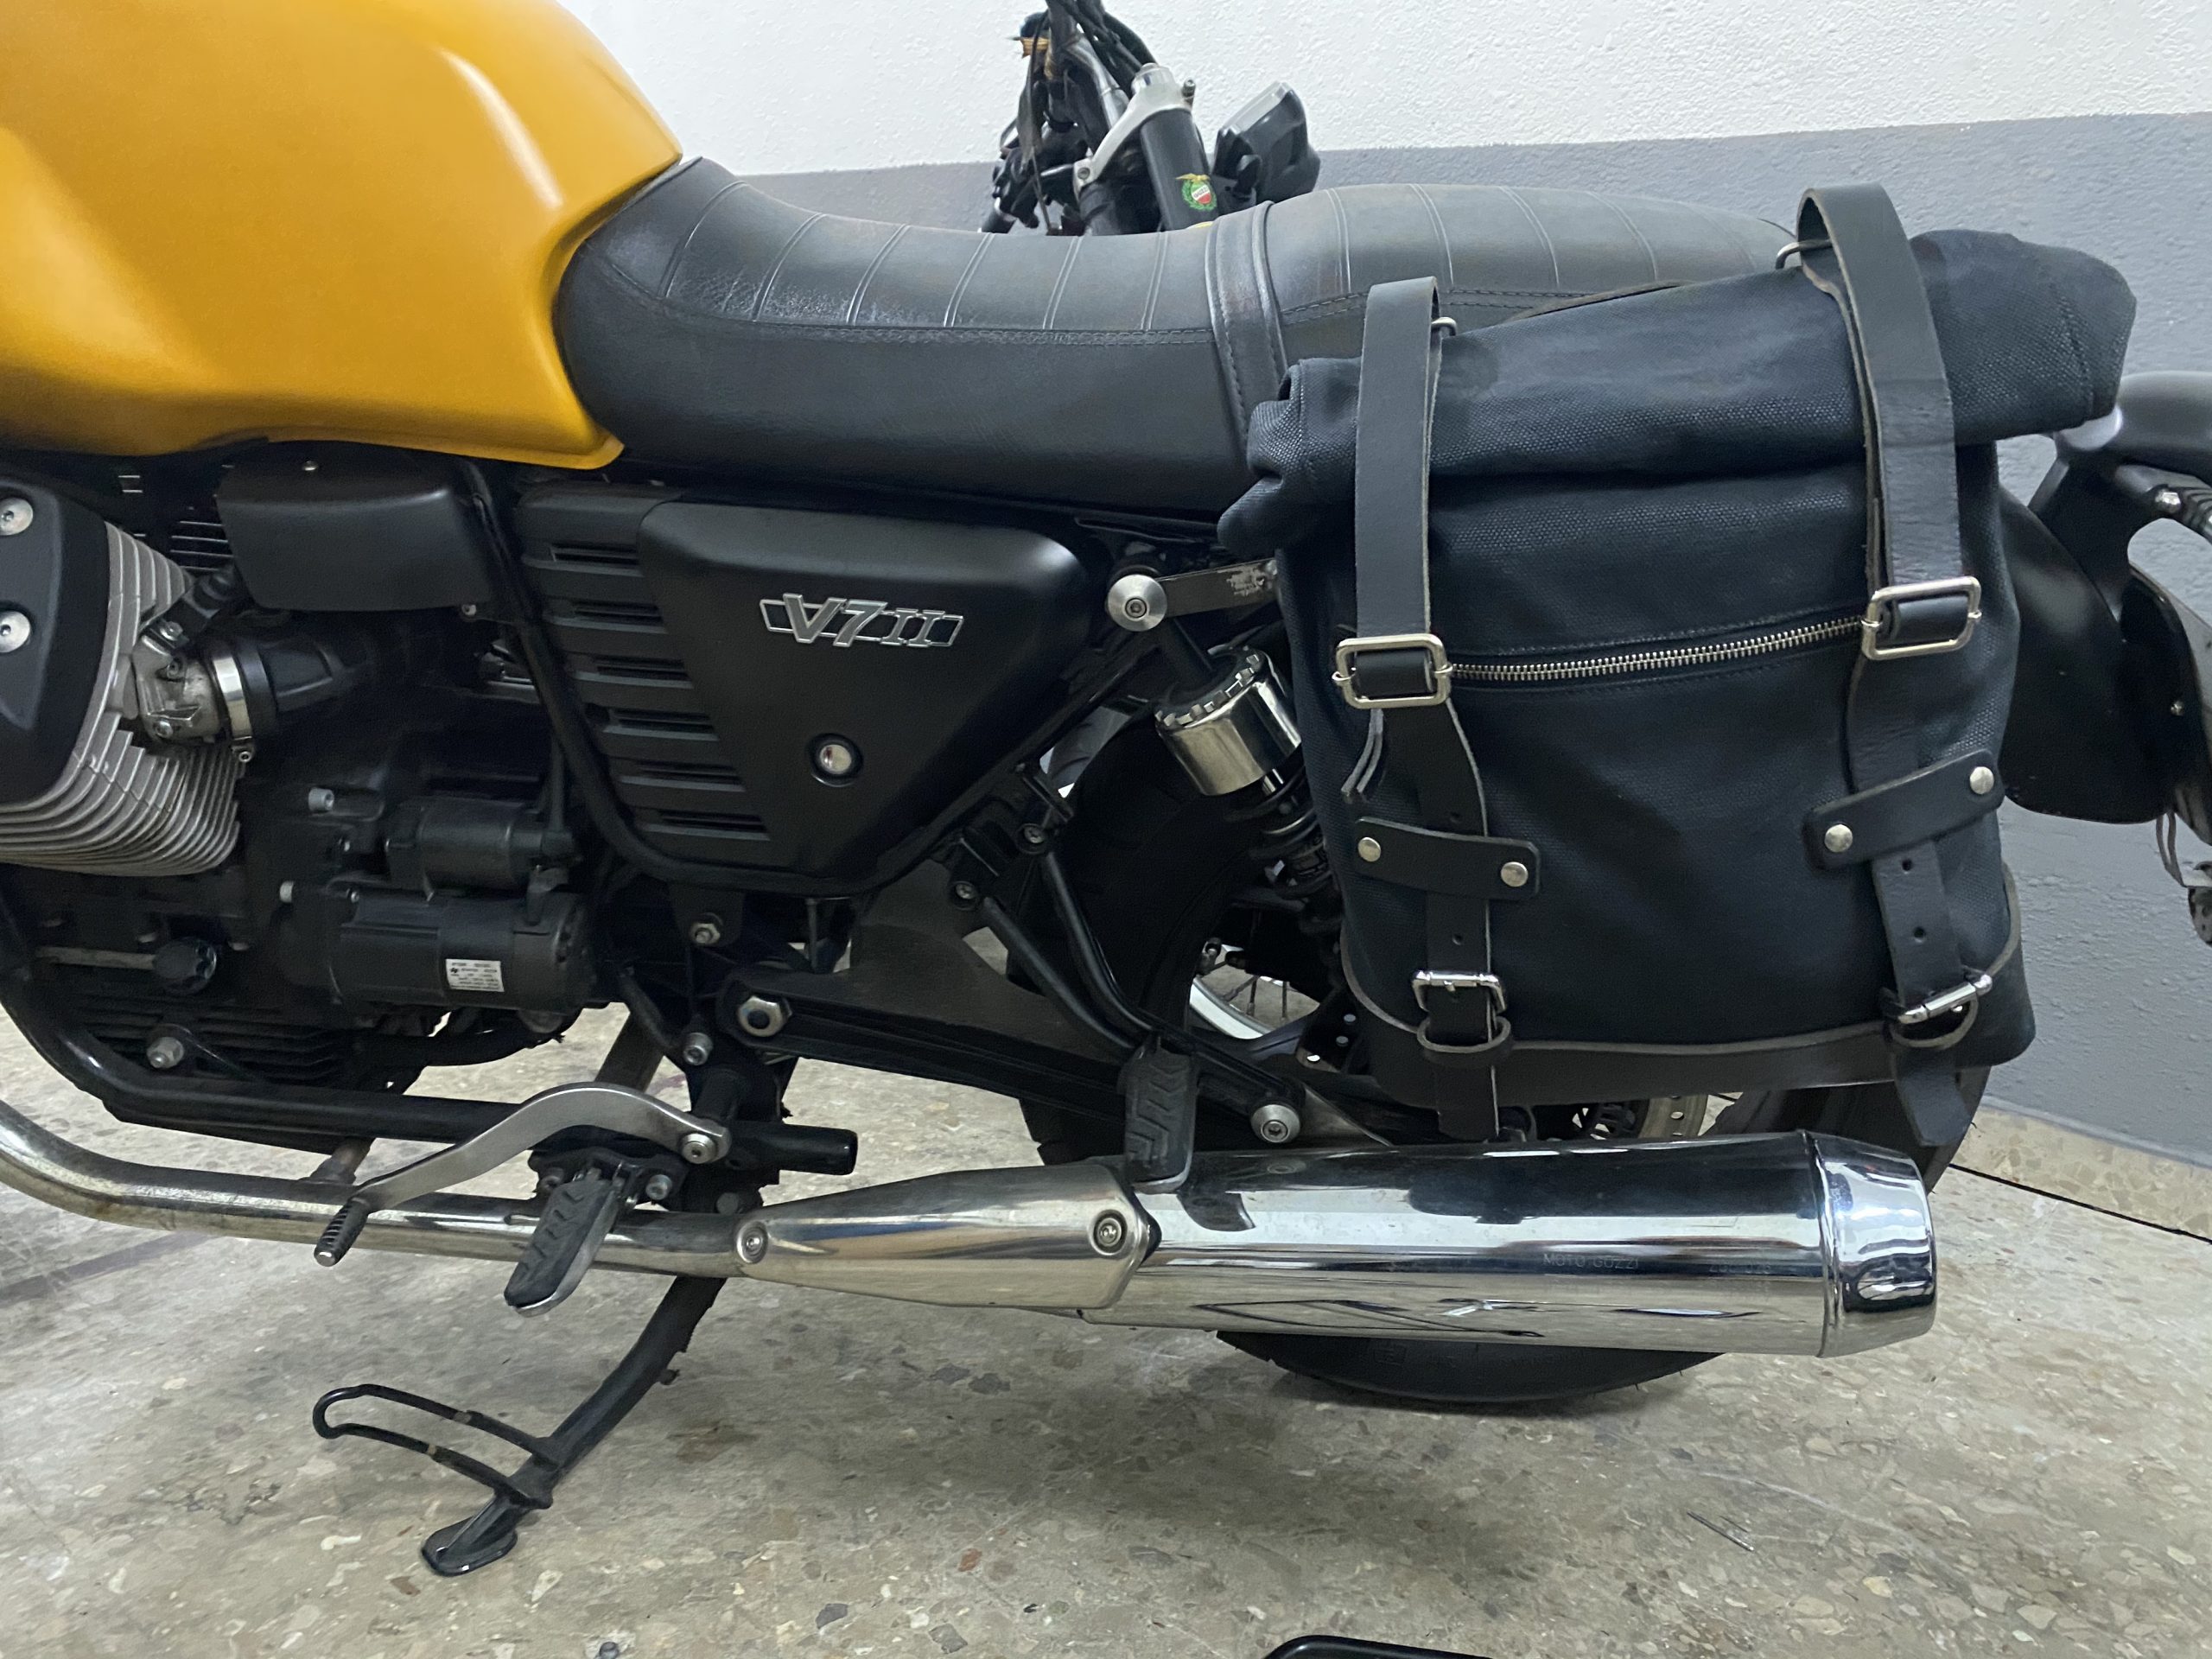 Moto-Guzzi V7 Satteltaschenhalterung (beidseitig) Satin Black - La Poderosa  Goods - Satteltaschen, Gepäck und Premium-Motorradzubehör